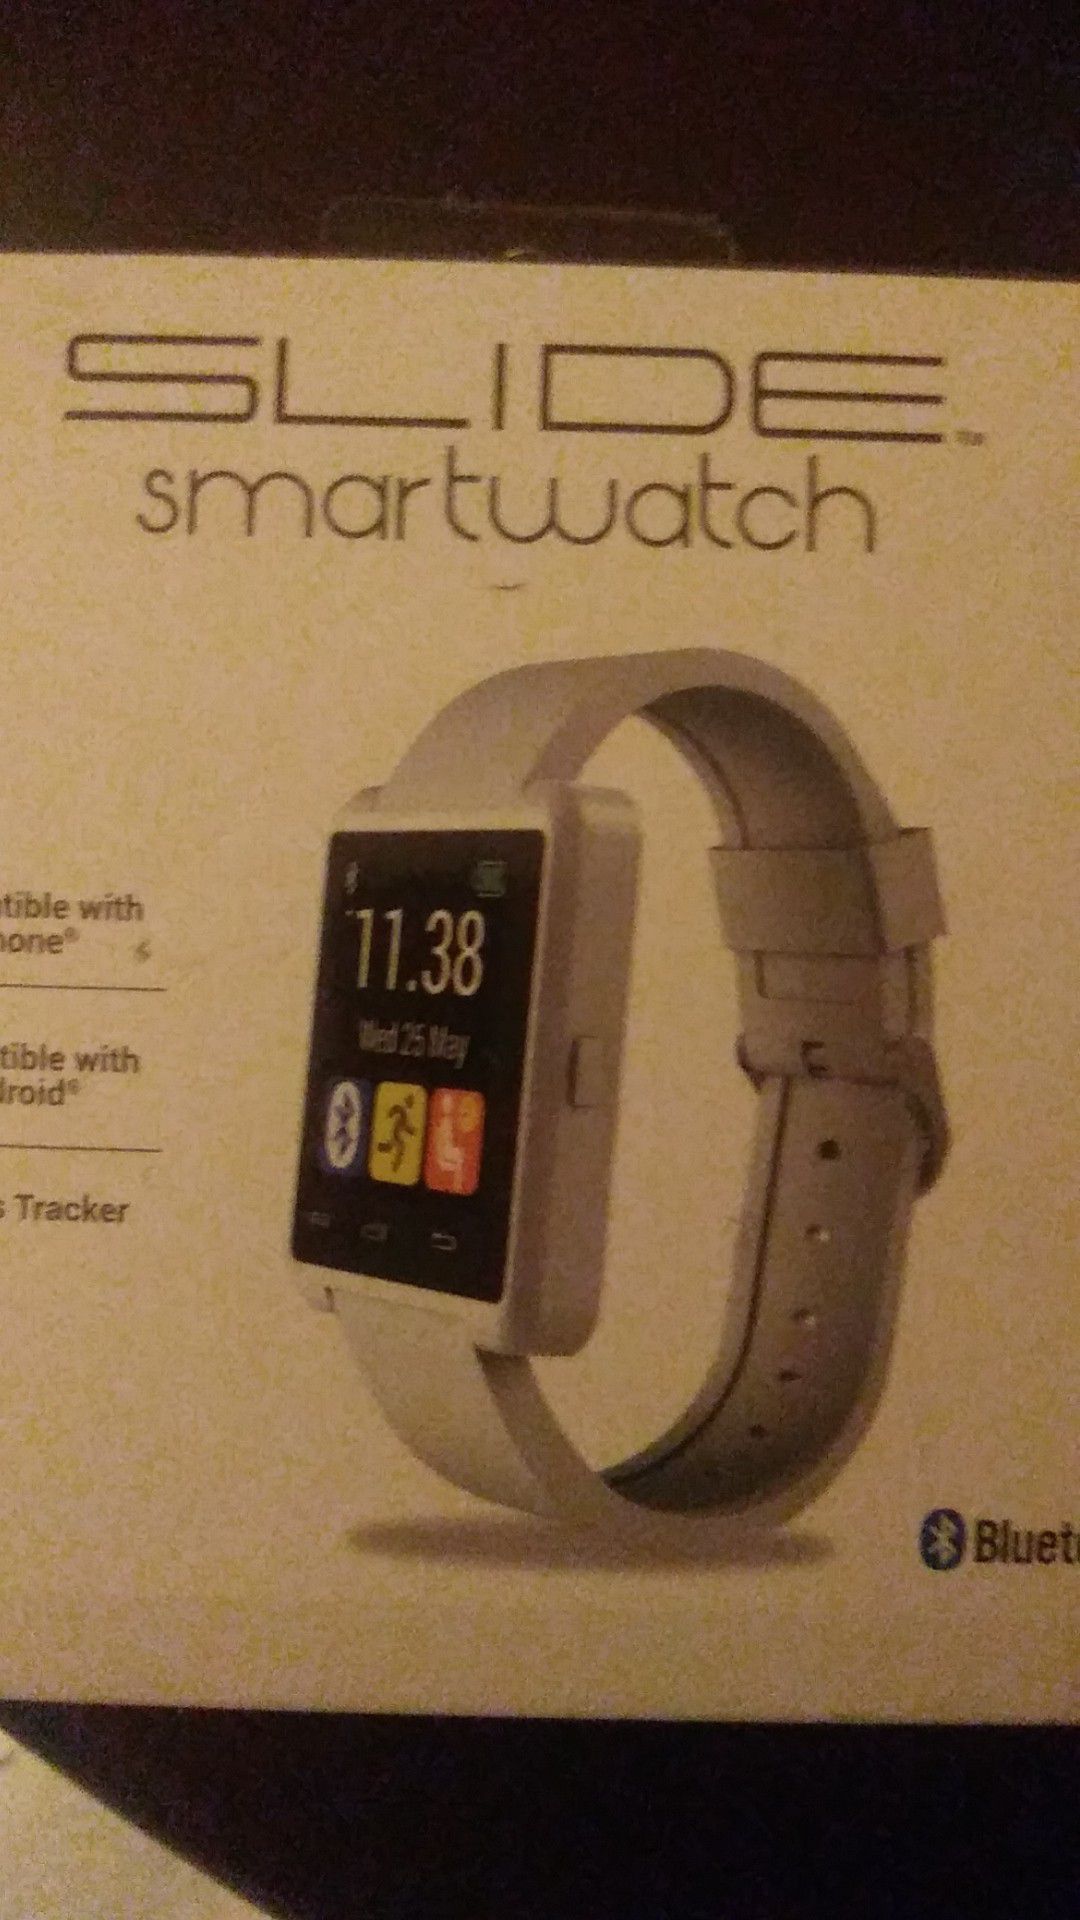 Slide smartwatch